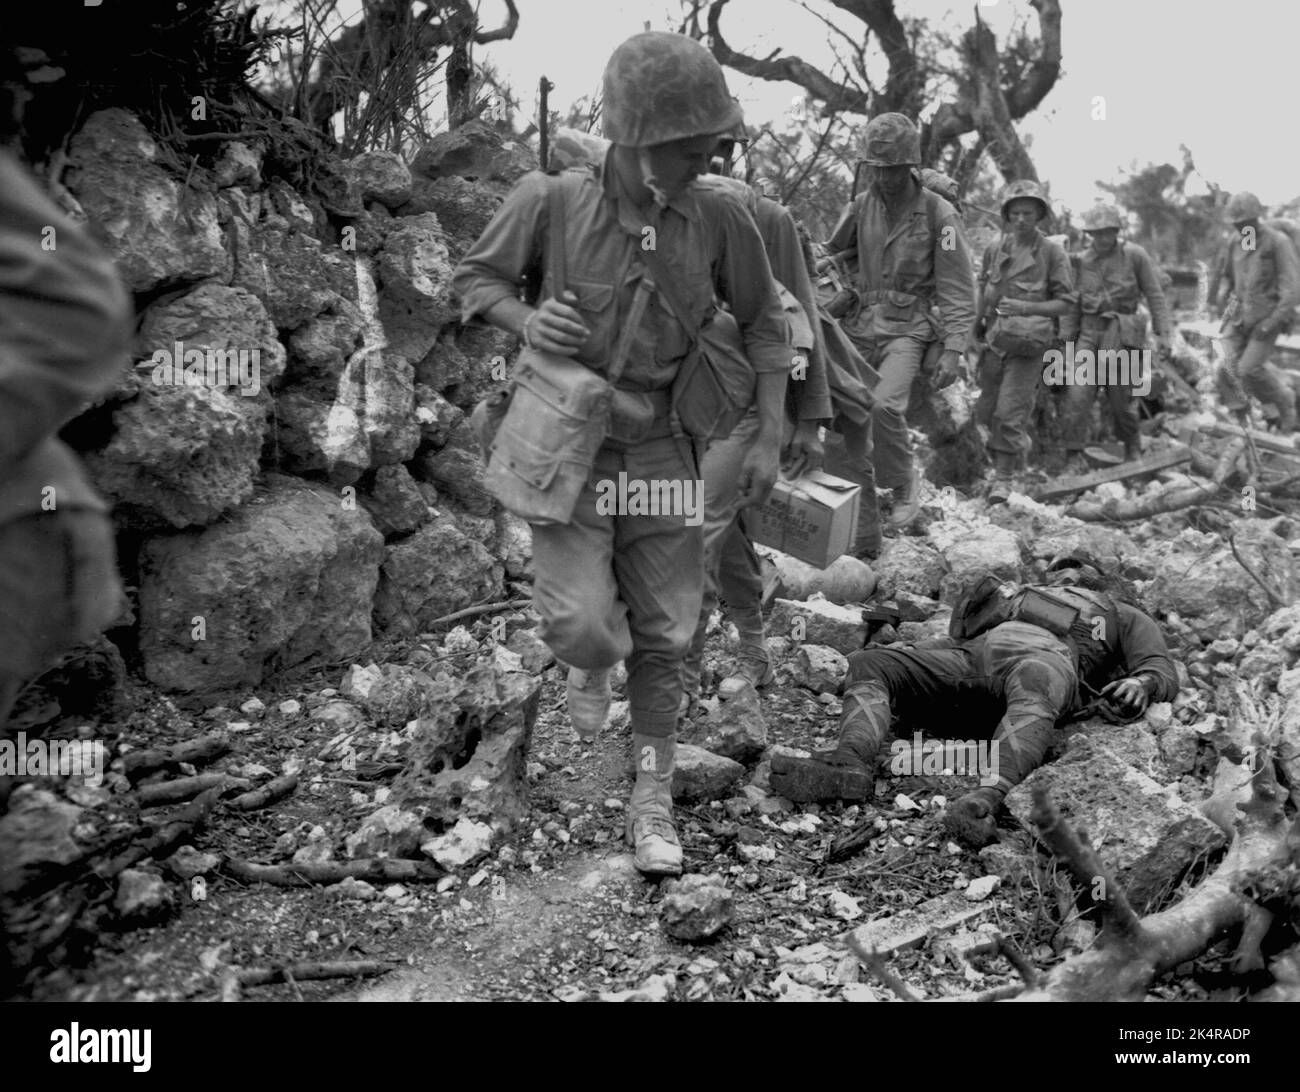 OKINAWA, PAZIFISCHER OZEAN - 1945. April - US-Marineinfanteristen passieren ein kleines Dorf, in dem japanische Soldaten nach dem Kampf gegen japanische Truppen auf Okina tot lagen Stockfoto